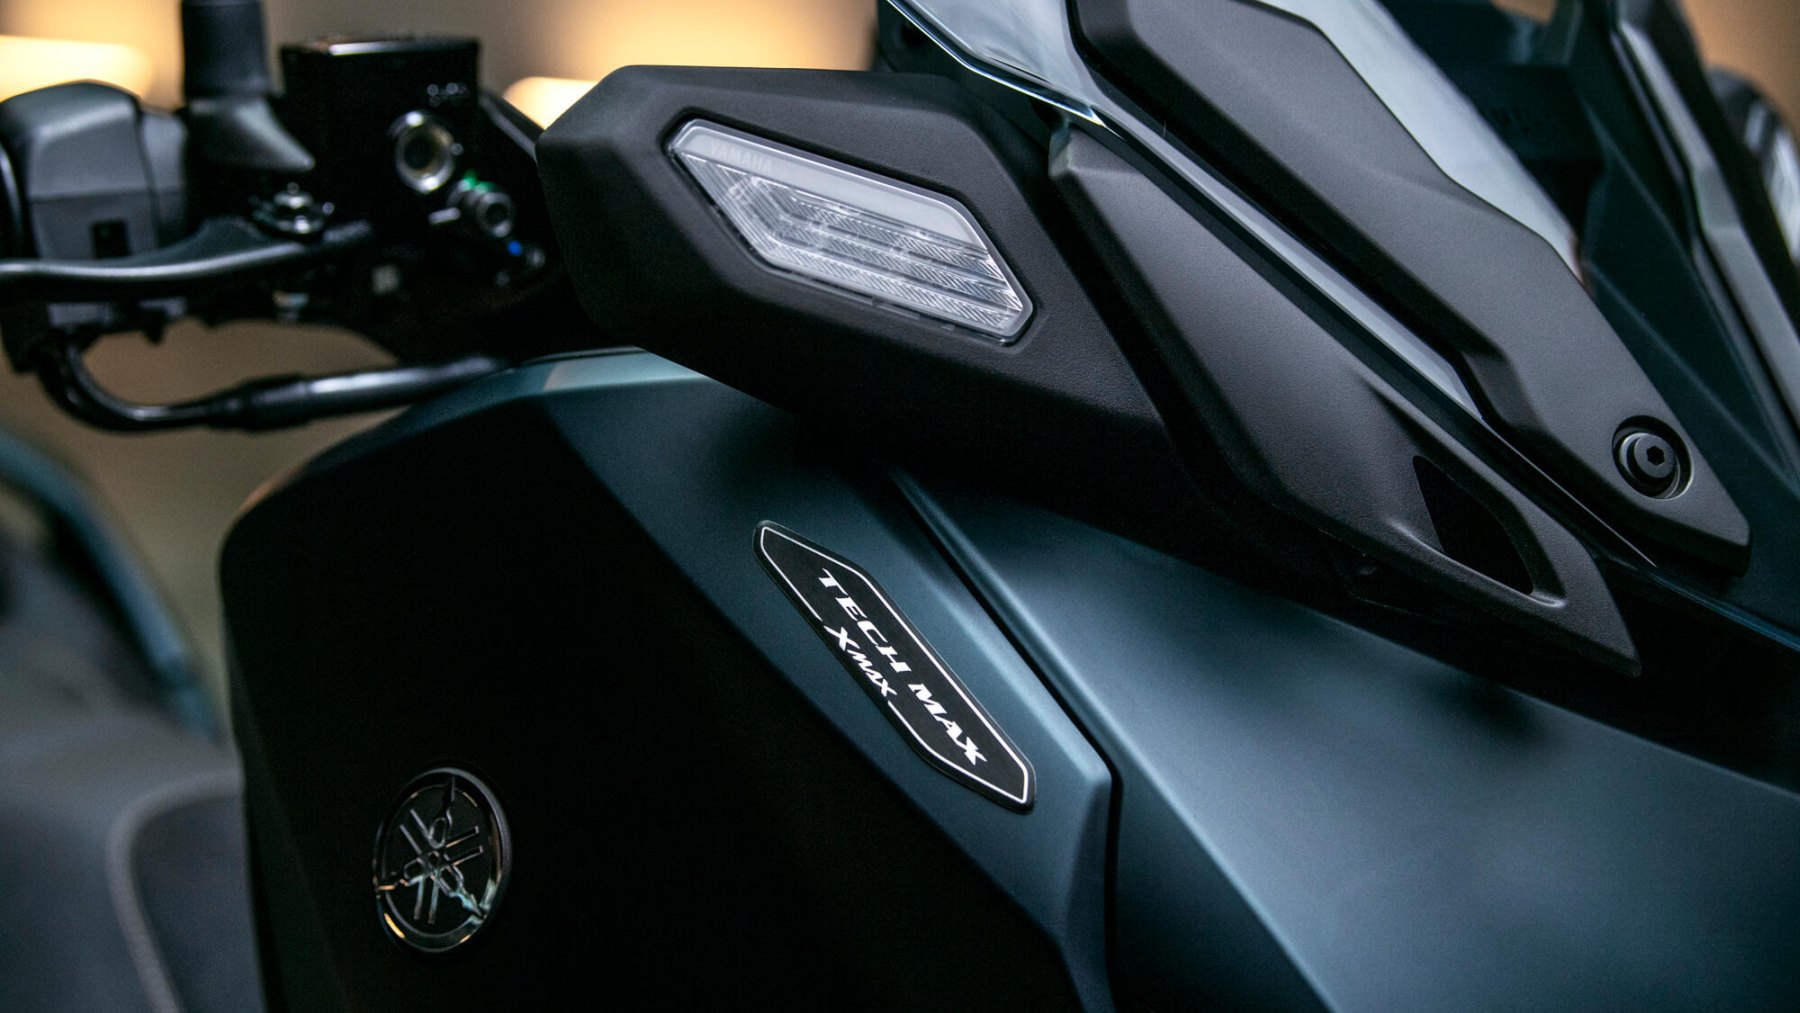 Vista de las líneas dinámicas y faros delanteros de la Yamaha X-Max 125cc.